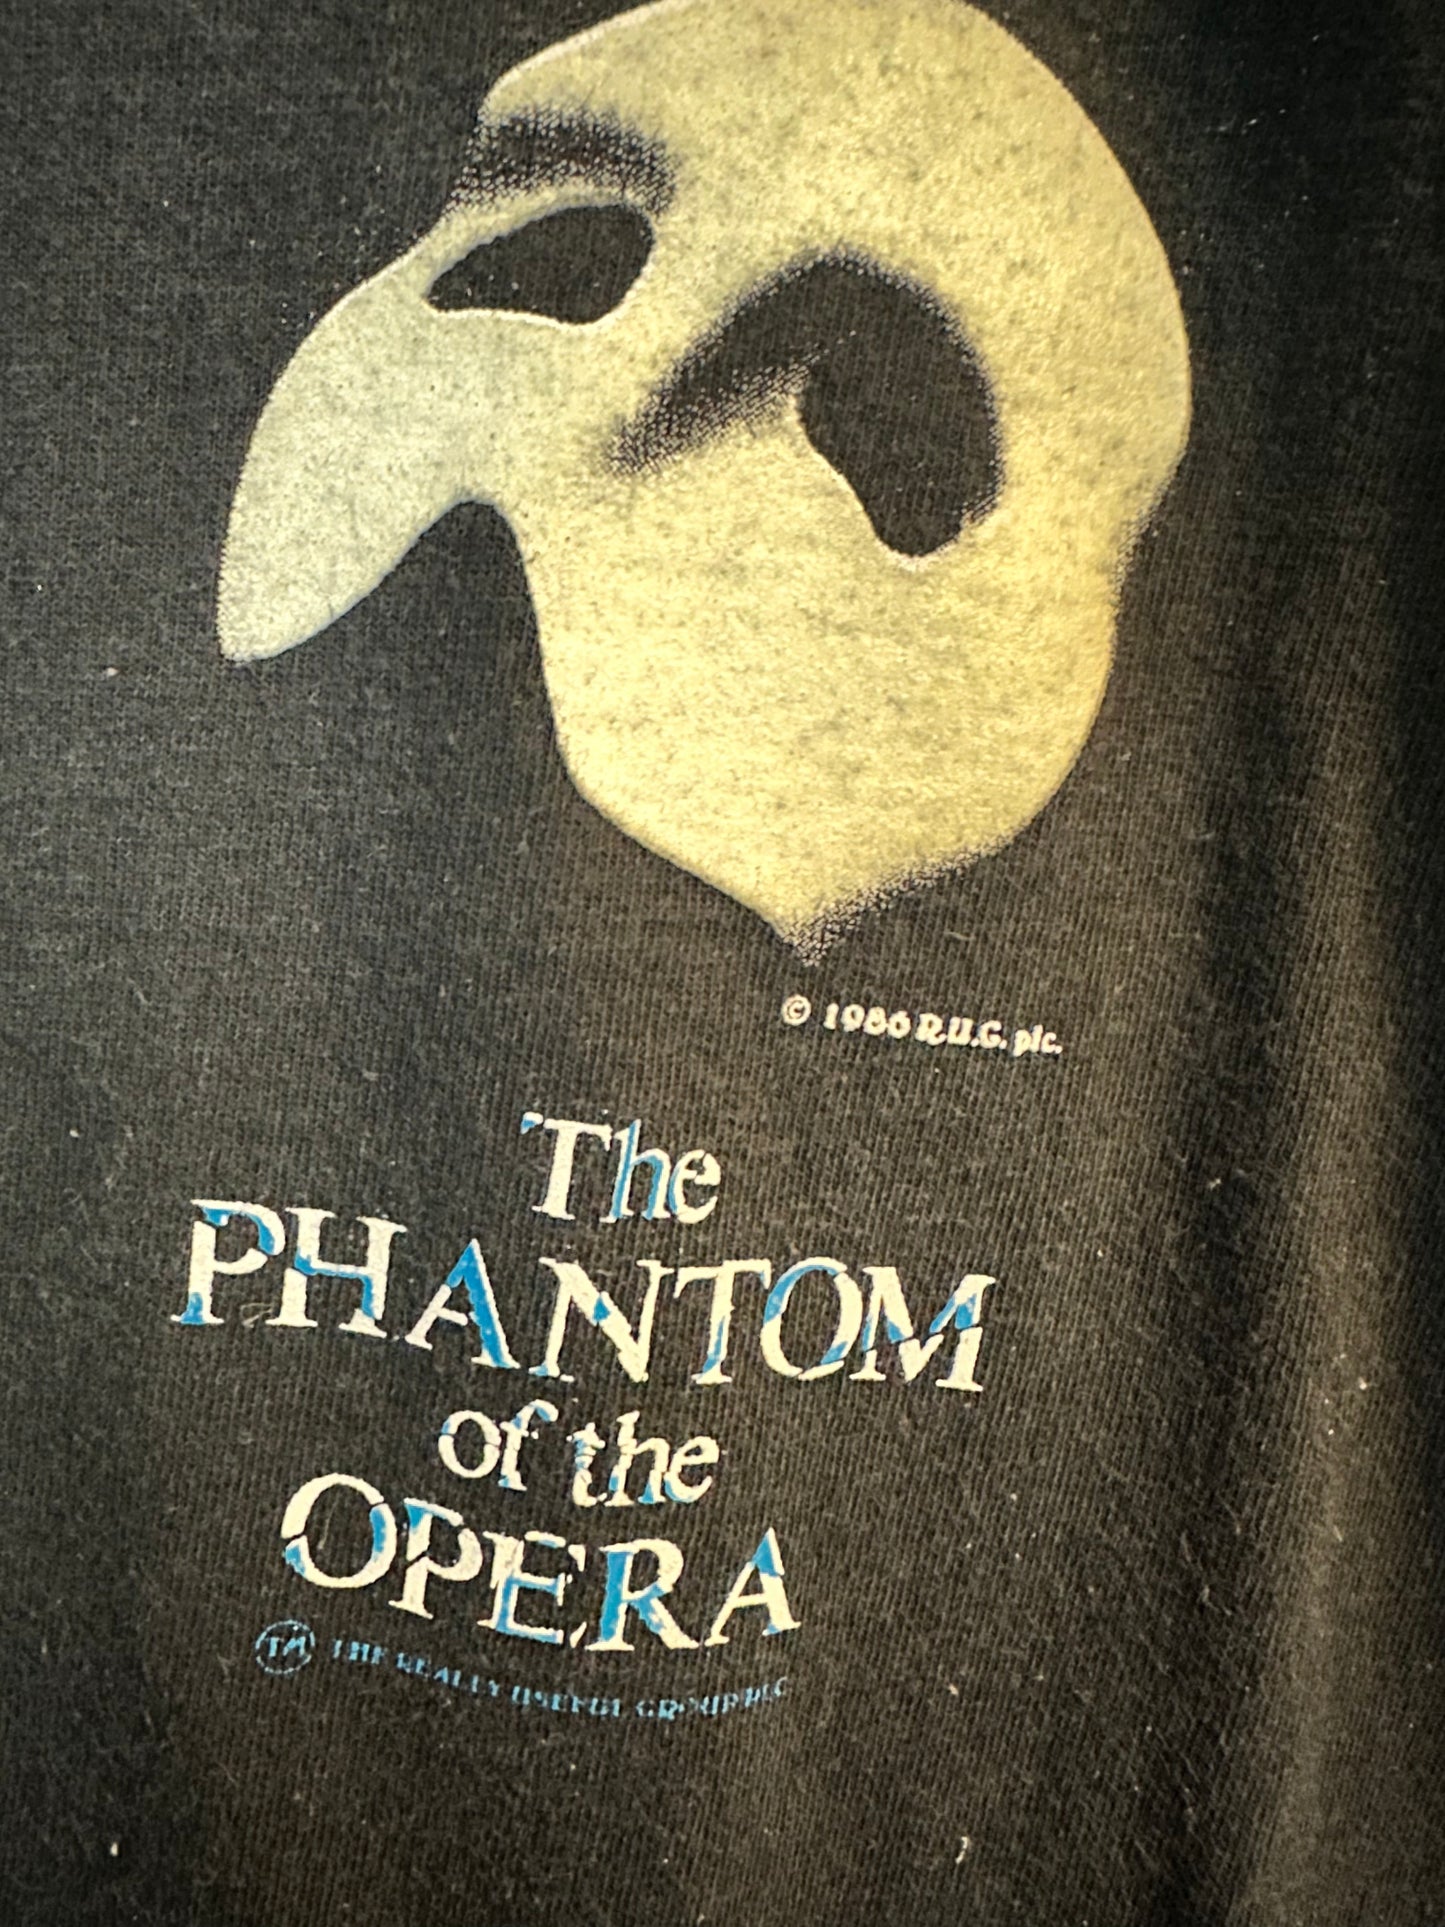 Phantom der Oper T-Shirt